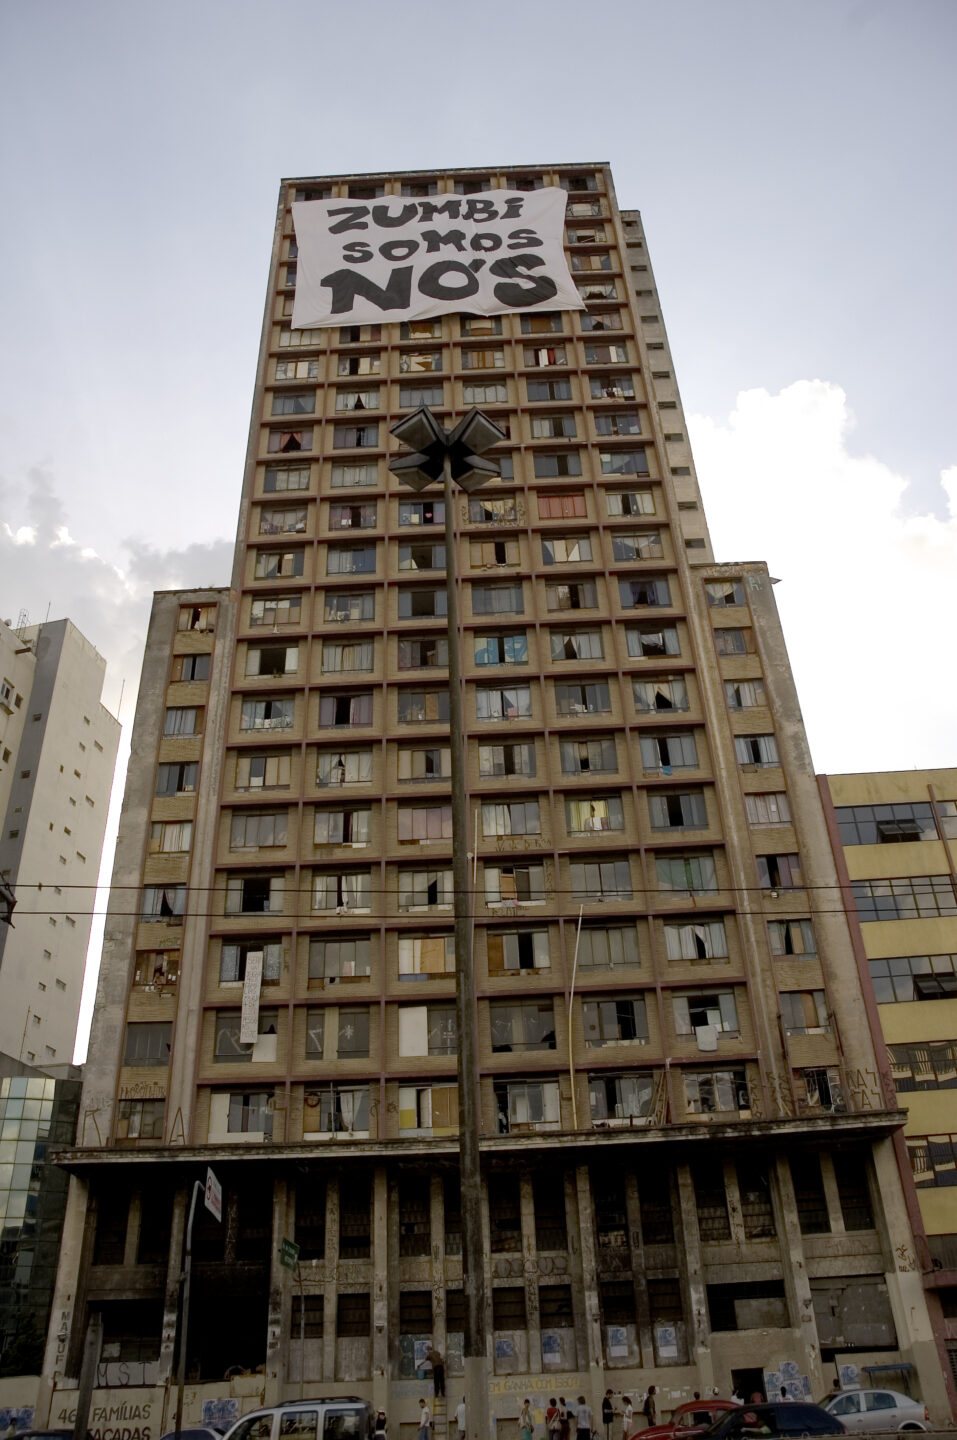 Foto de um prédio onde existe a Ocupação Prestes Maia com faixa da Frente 3 de fevereira presa no teto que diz "Zumbi somos nós".